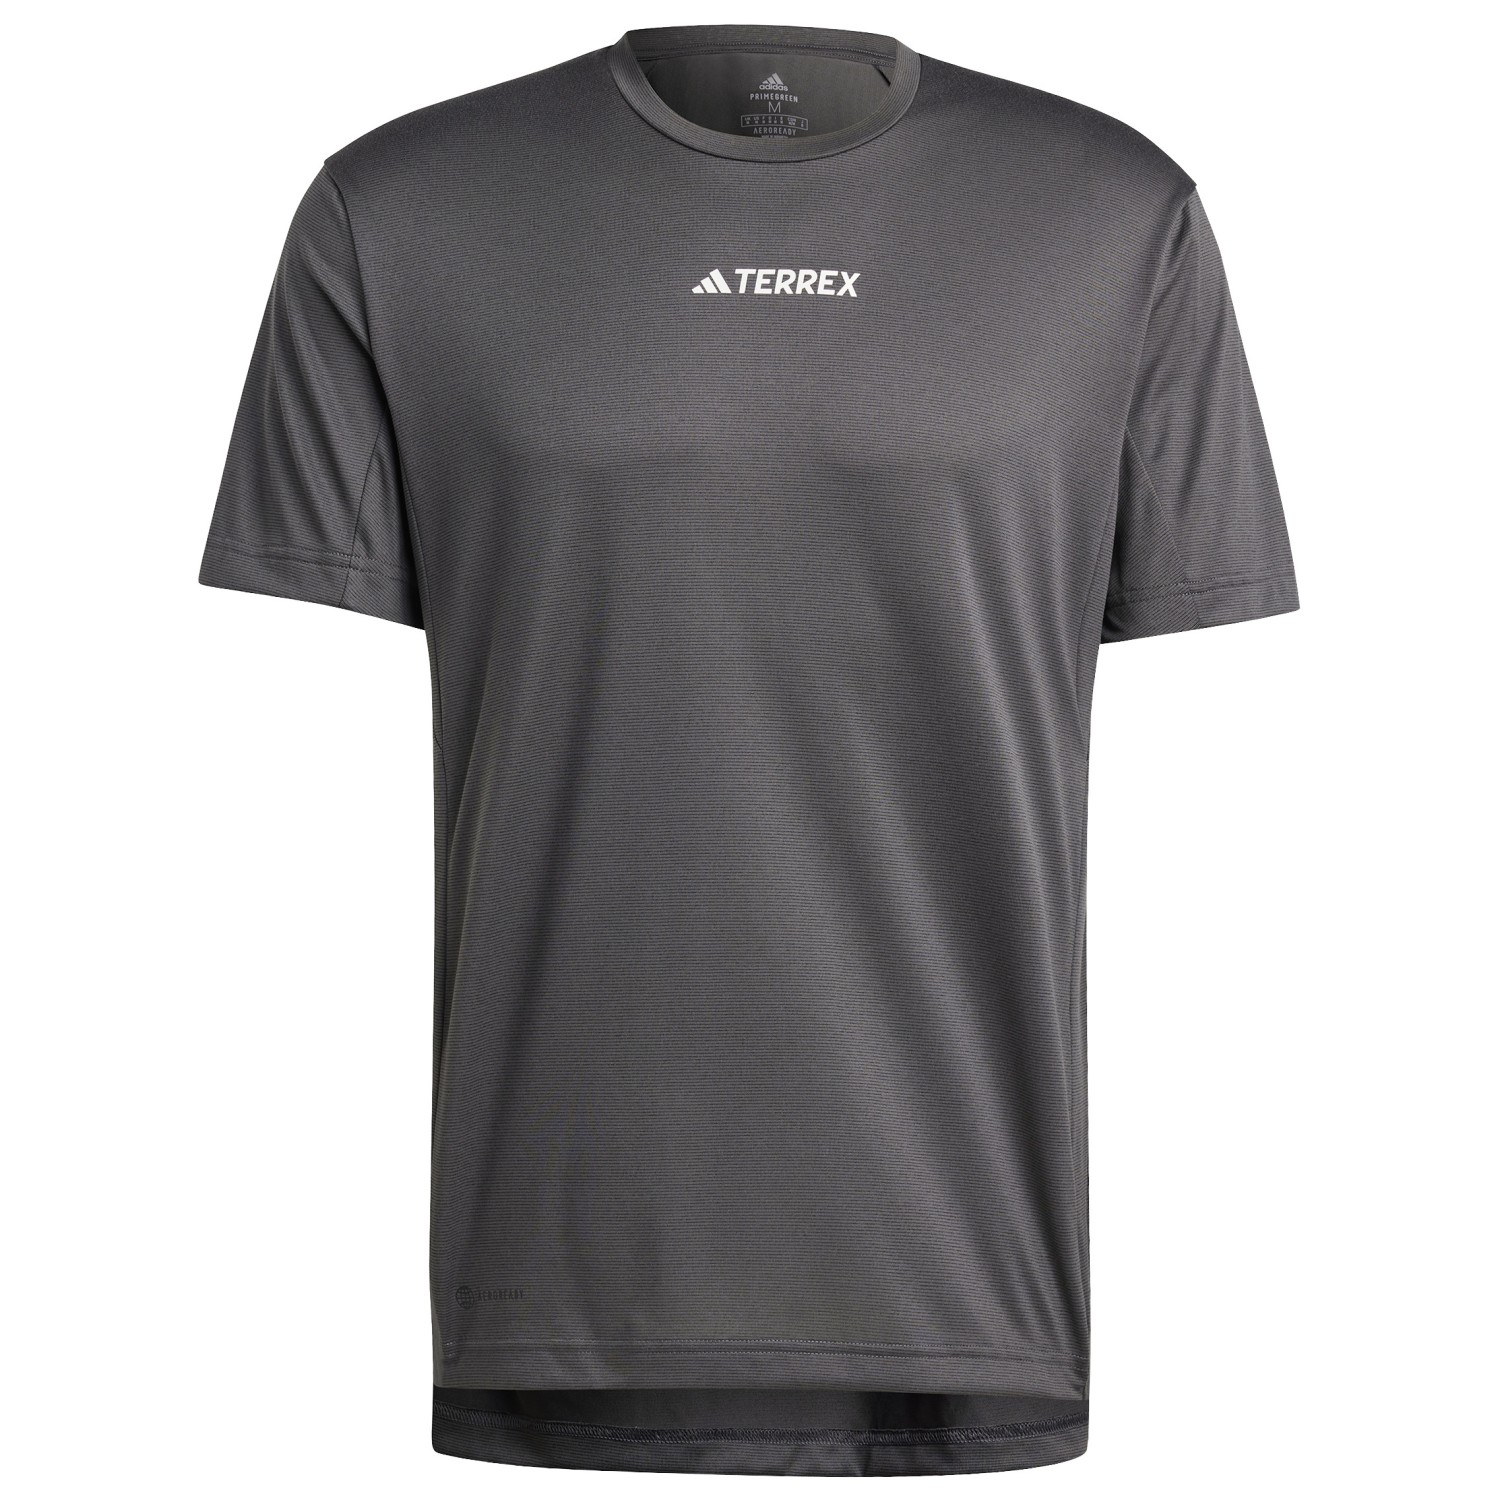 Функциональная рубашка Adidas Terrex Terrex Multi T Shirt, черный фотографии